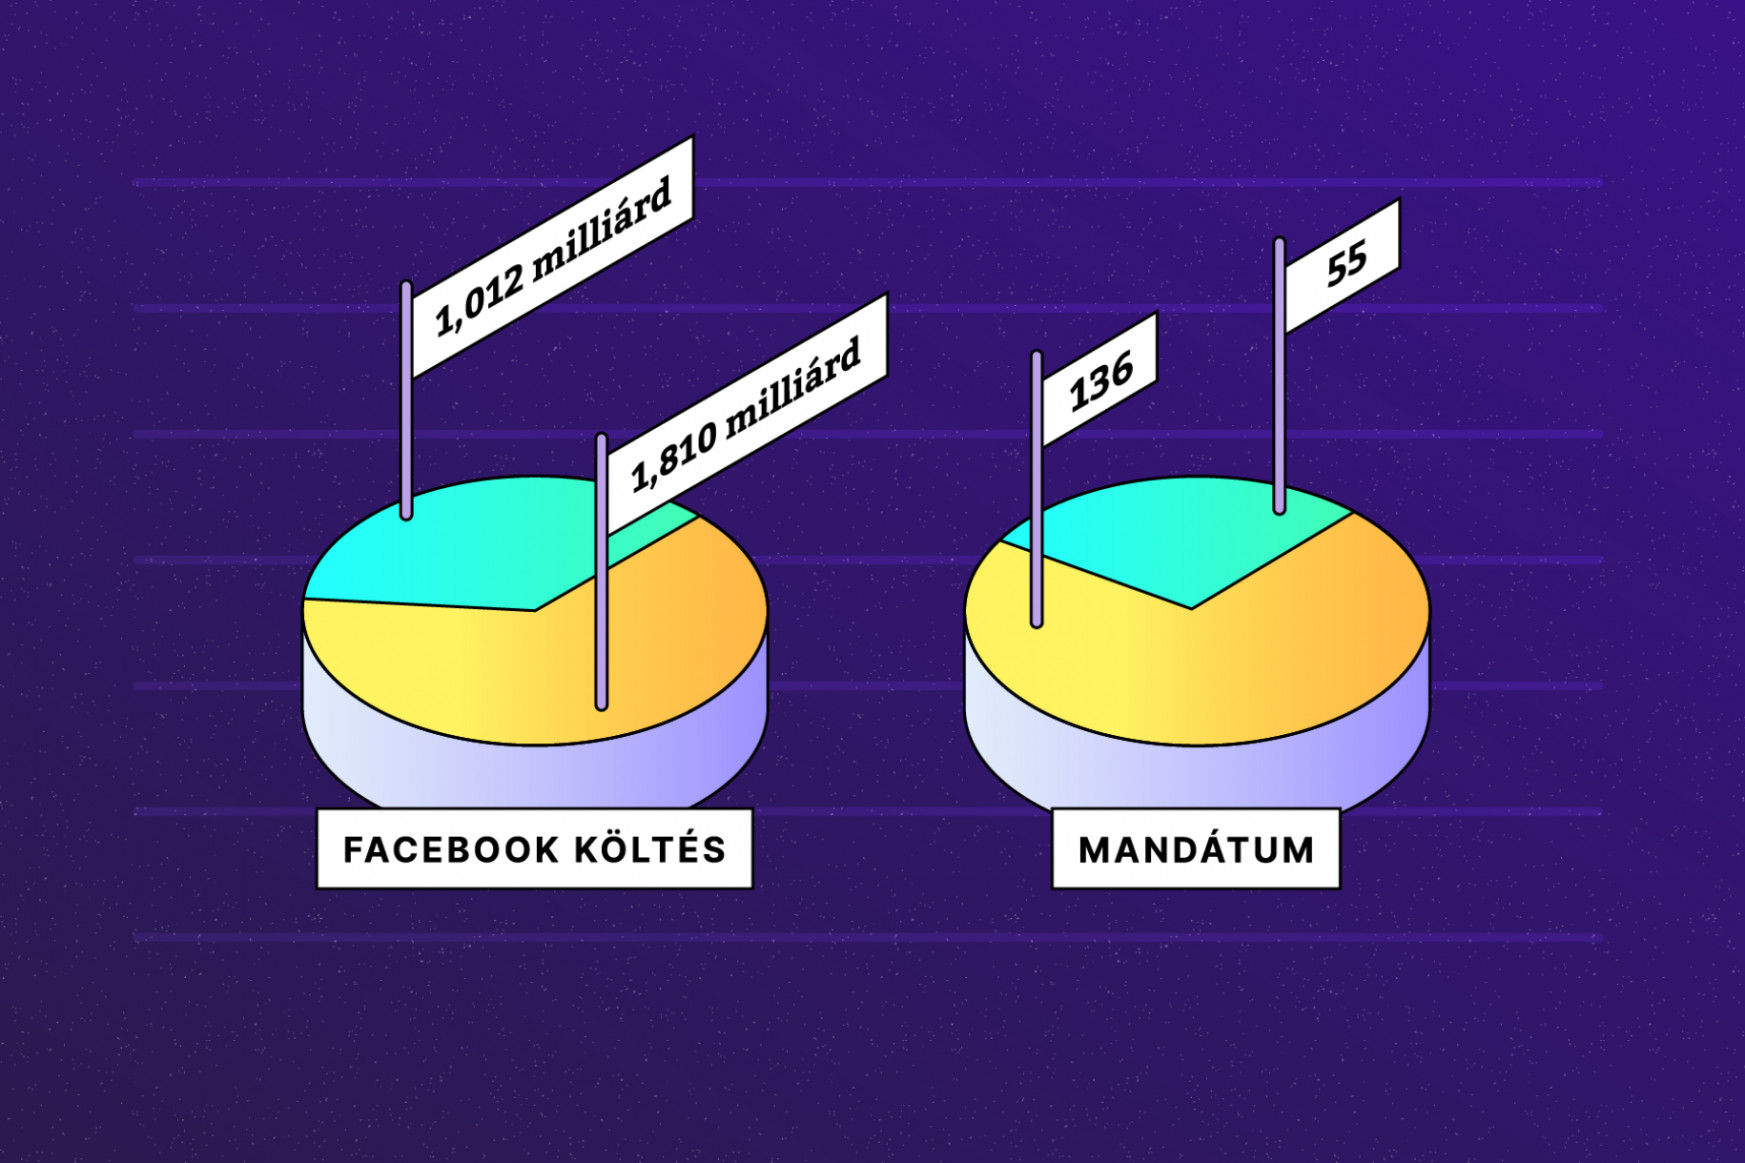 Kampány a Facebookon: 50 nap, 3 milliárd forint